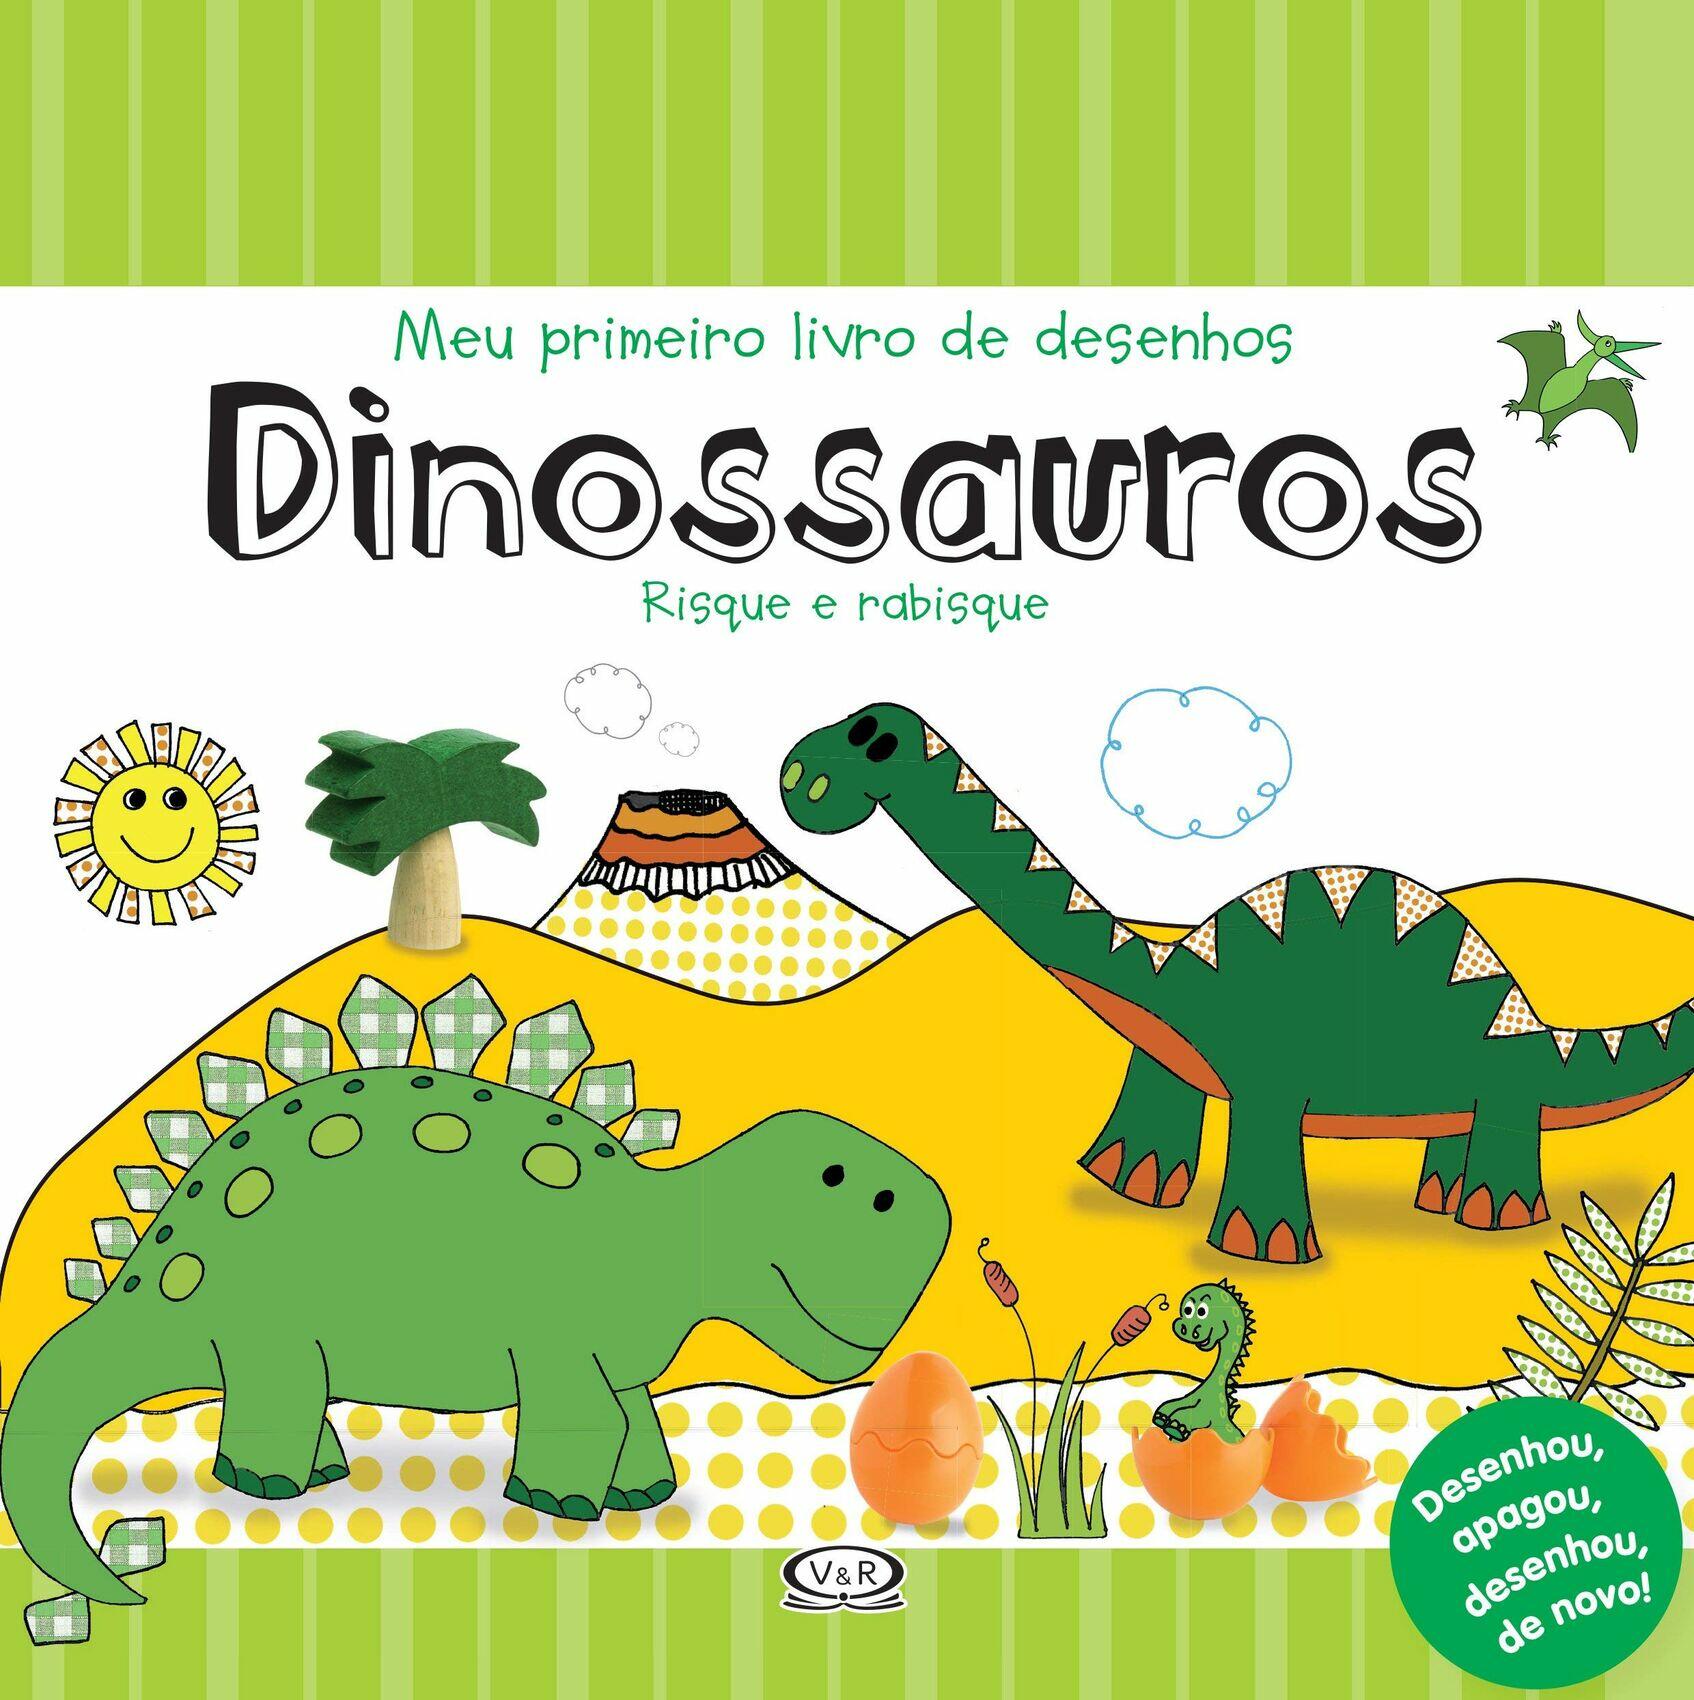 Dinossauros: Meu Primeiro Livro de Desenhos